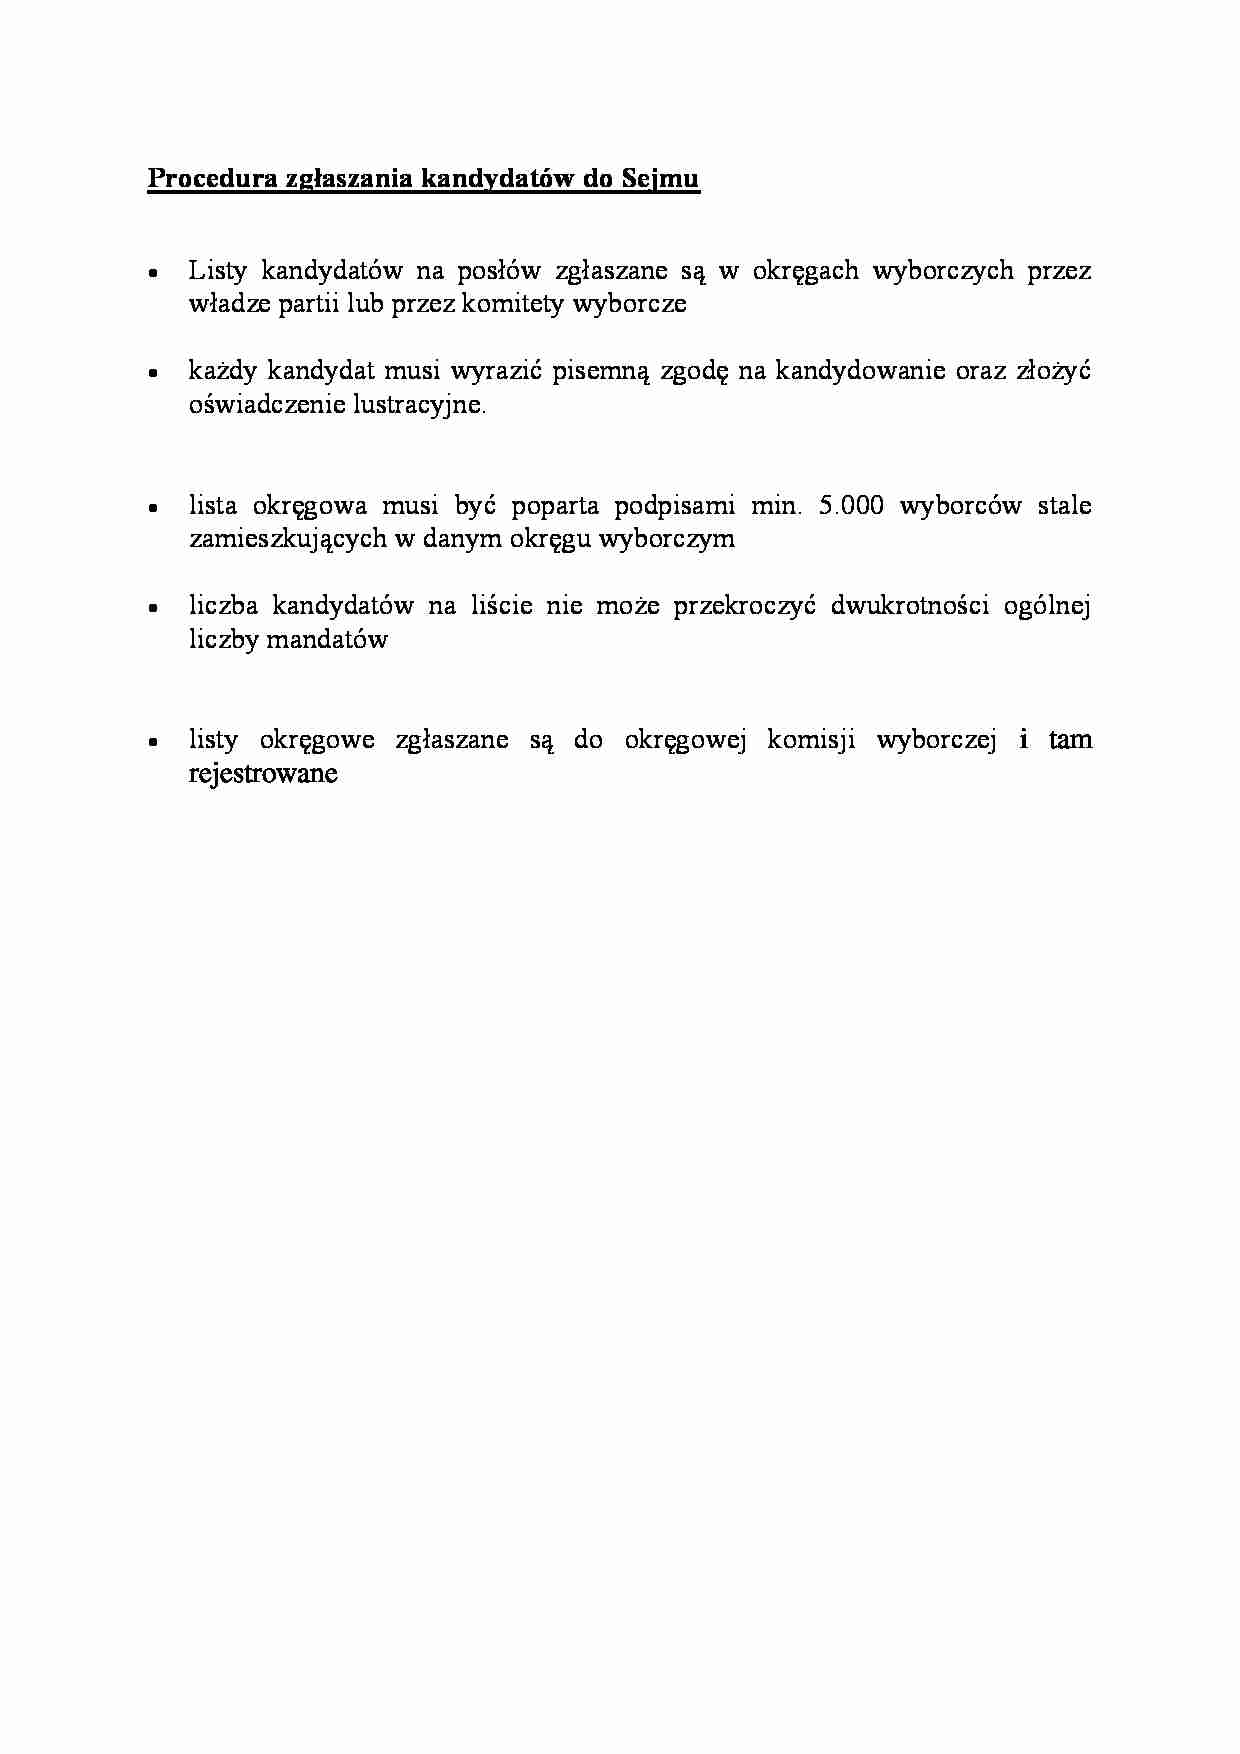 Procedura zgłaszania kandydatów do Sejmu - omówienie - strona 1